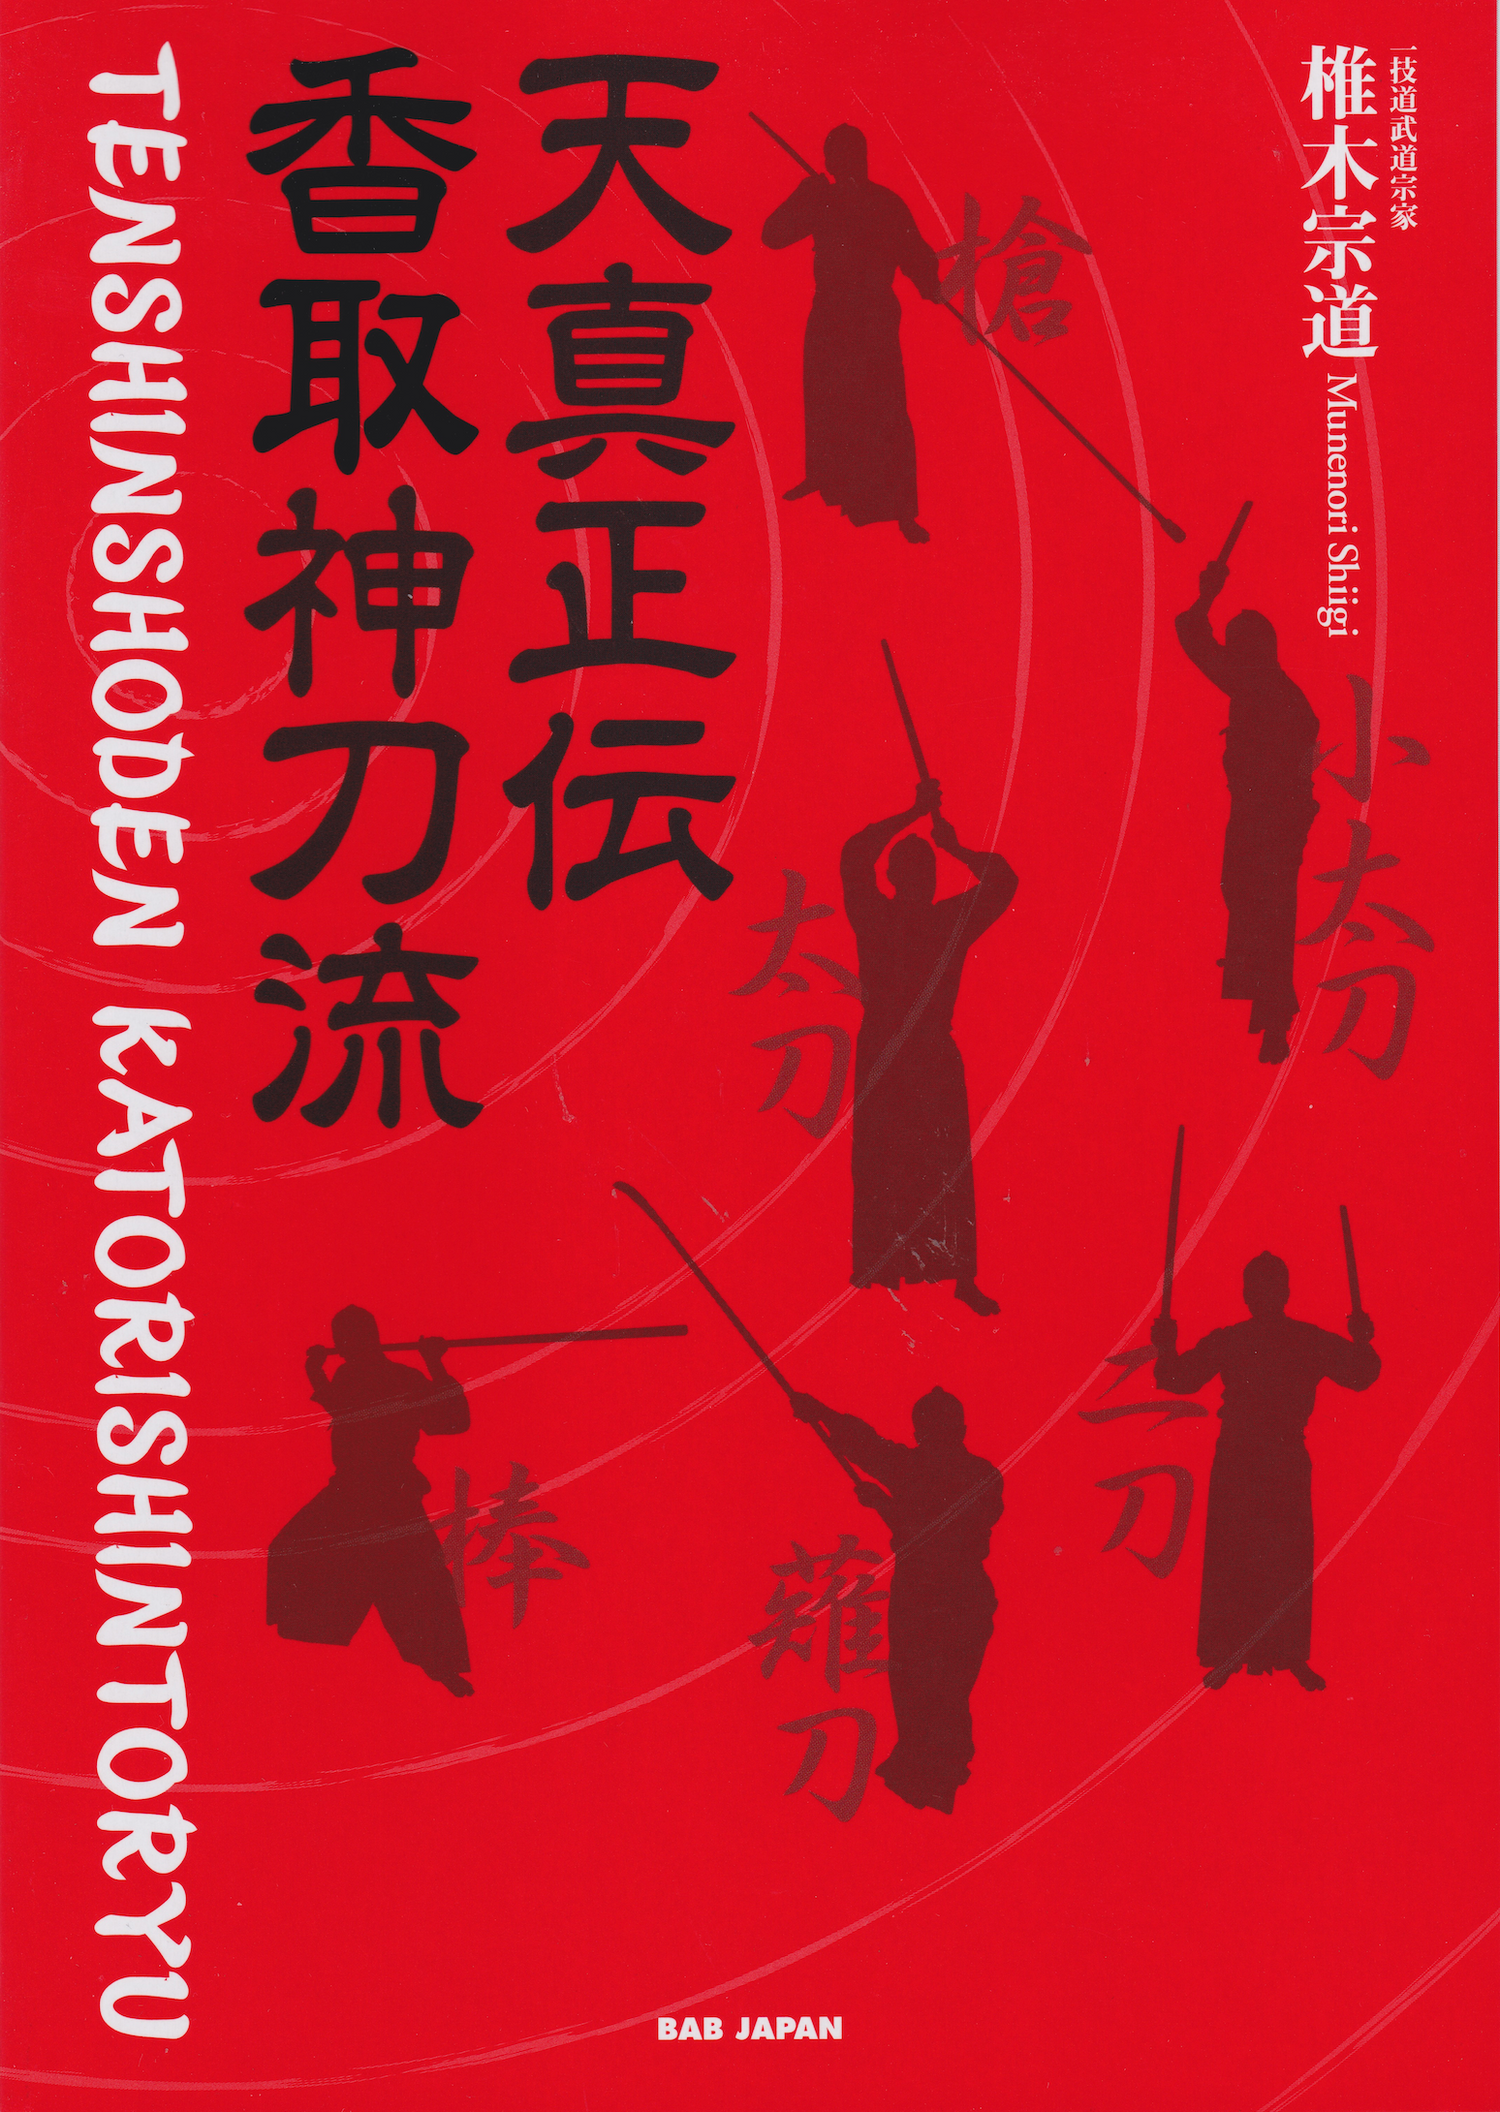 Tenshin Shoden Katori Shinto Ryu 2 Book Set (with English Translation) by Munenori Shiigi - Budovideos